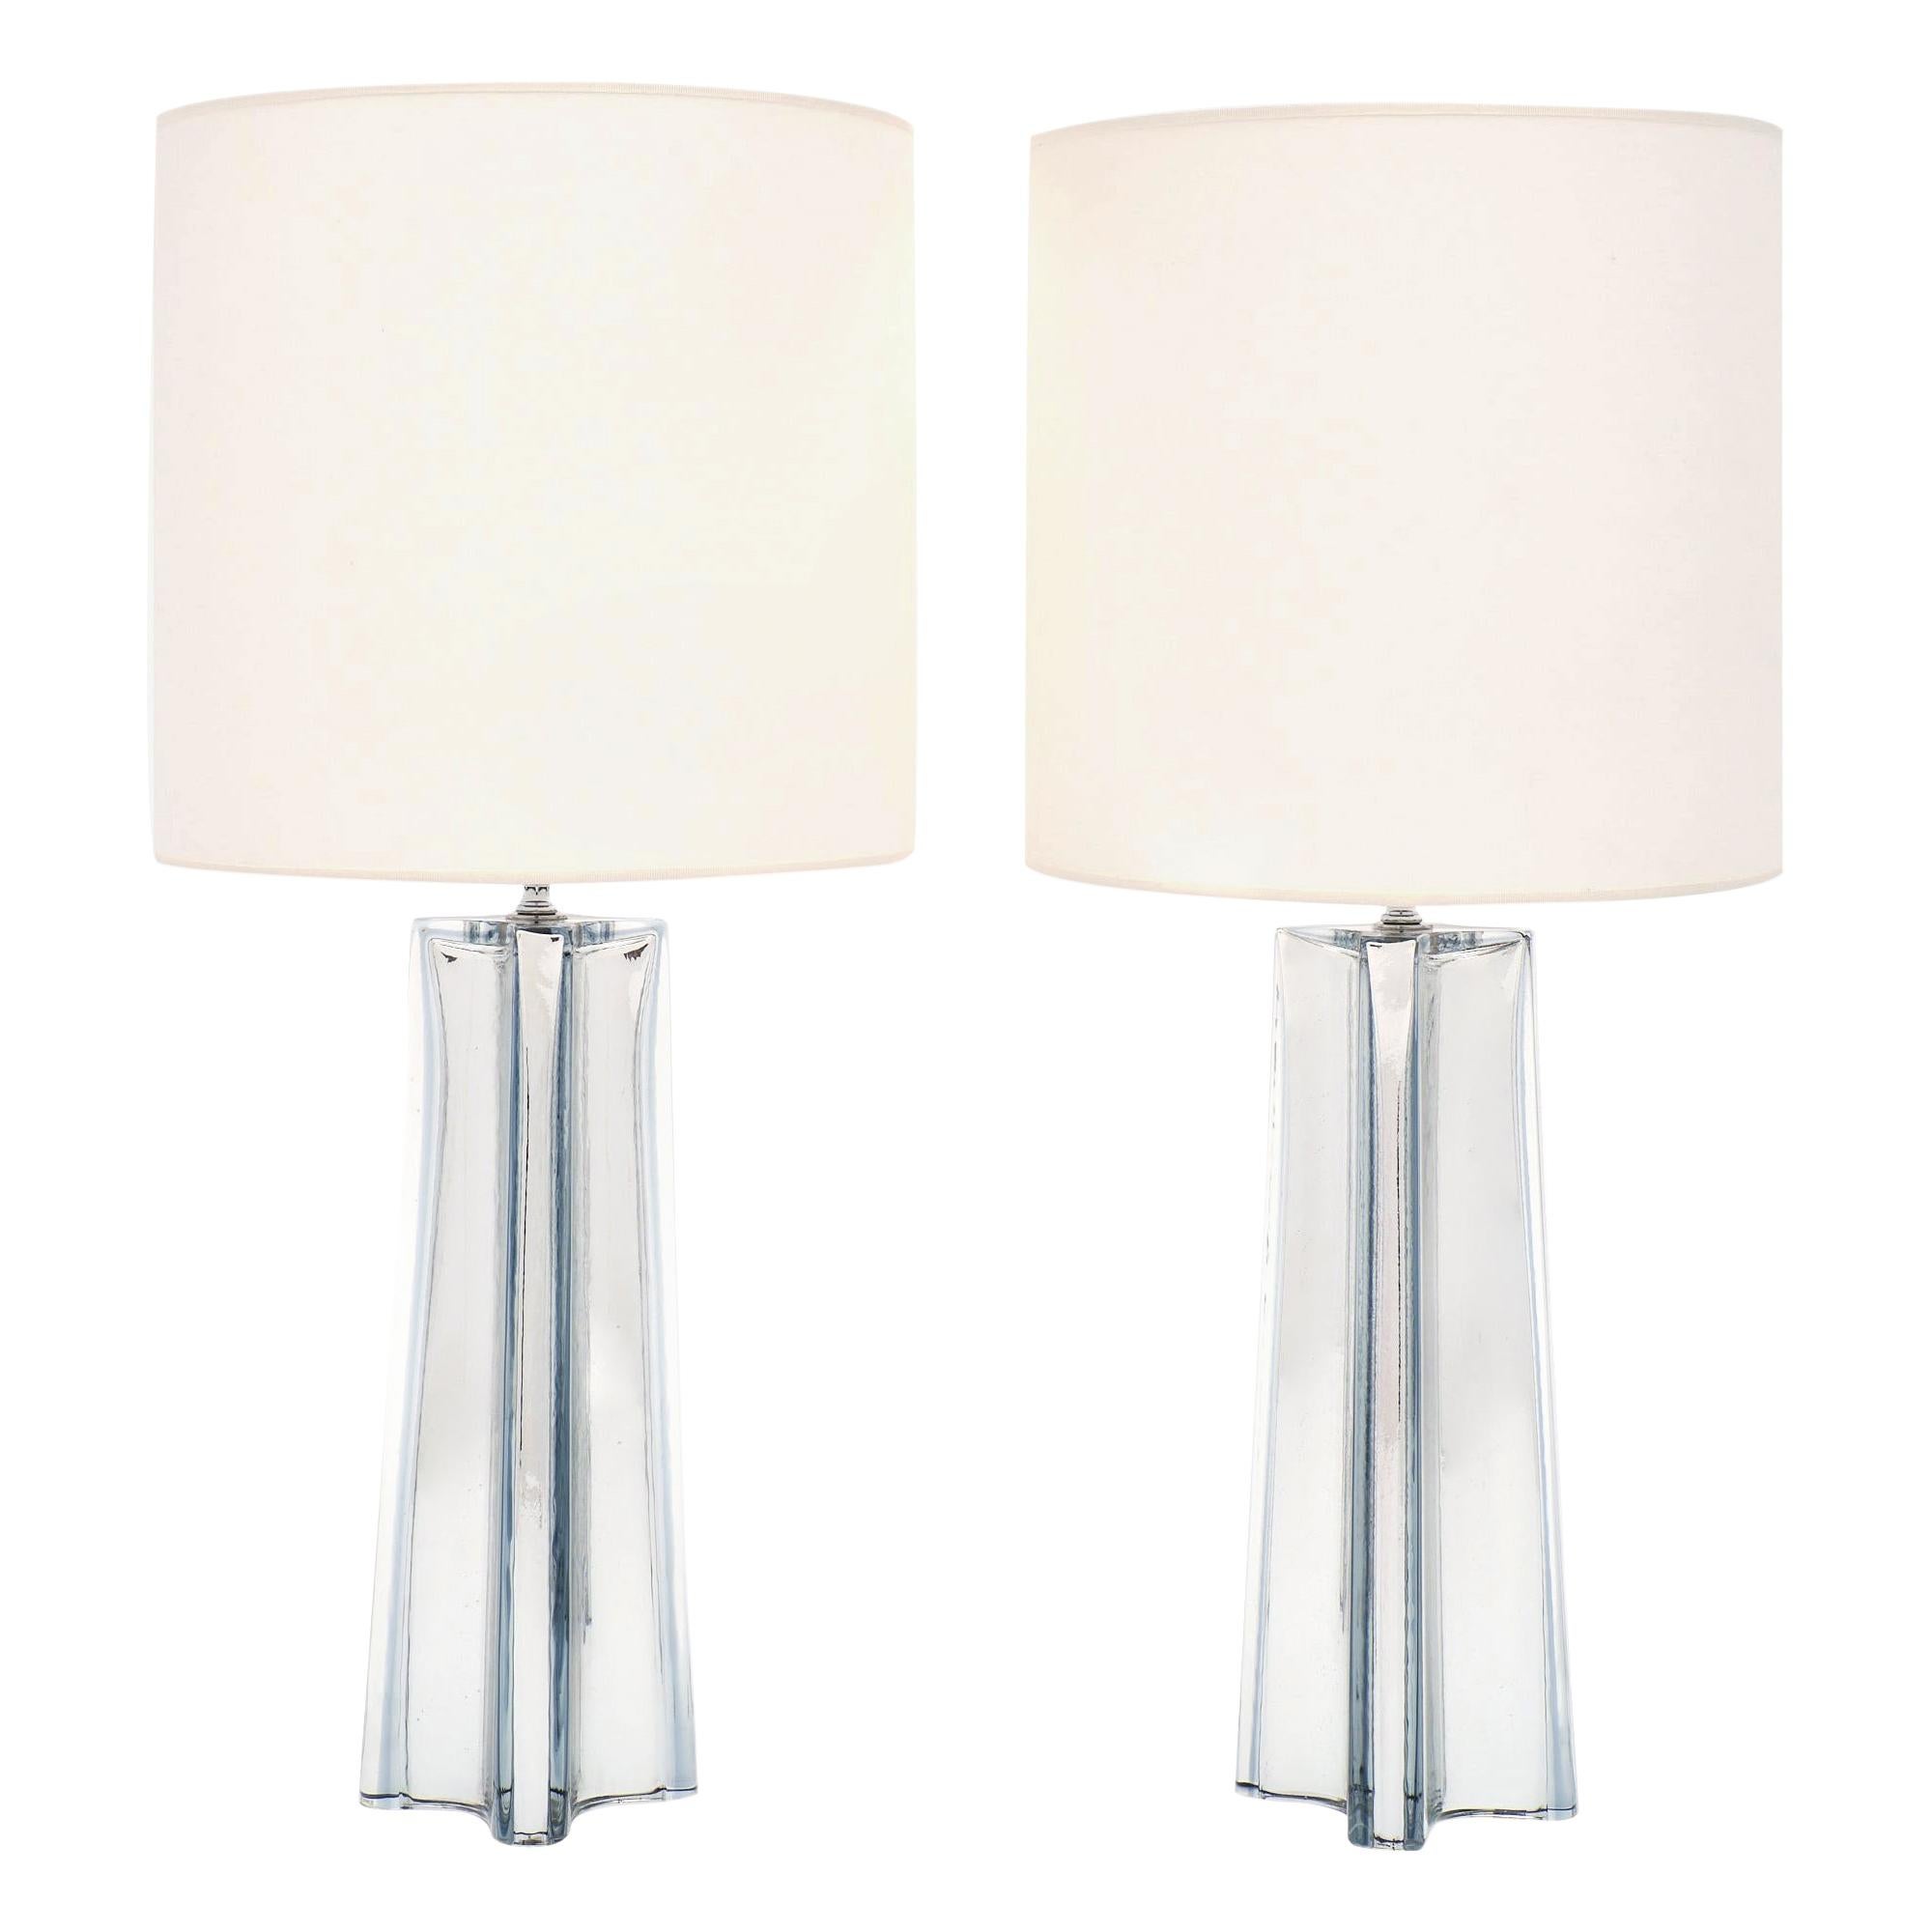 Mercury Glass “Quadrifoglio” Murano Lamps For Sale at 1stDibs